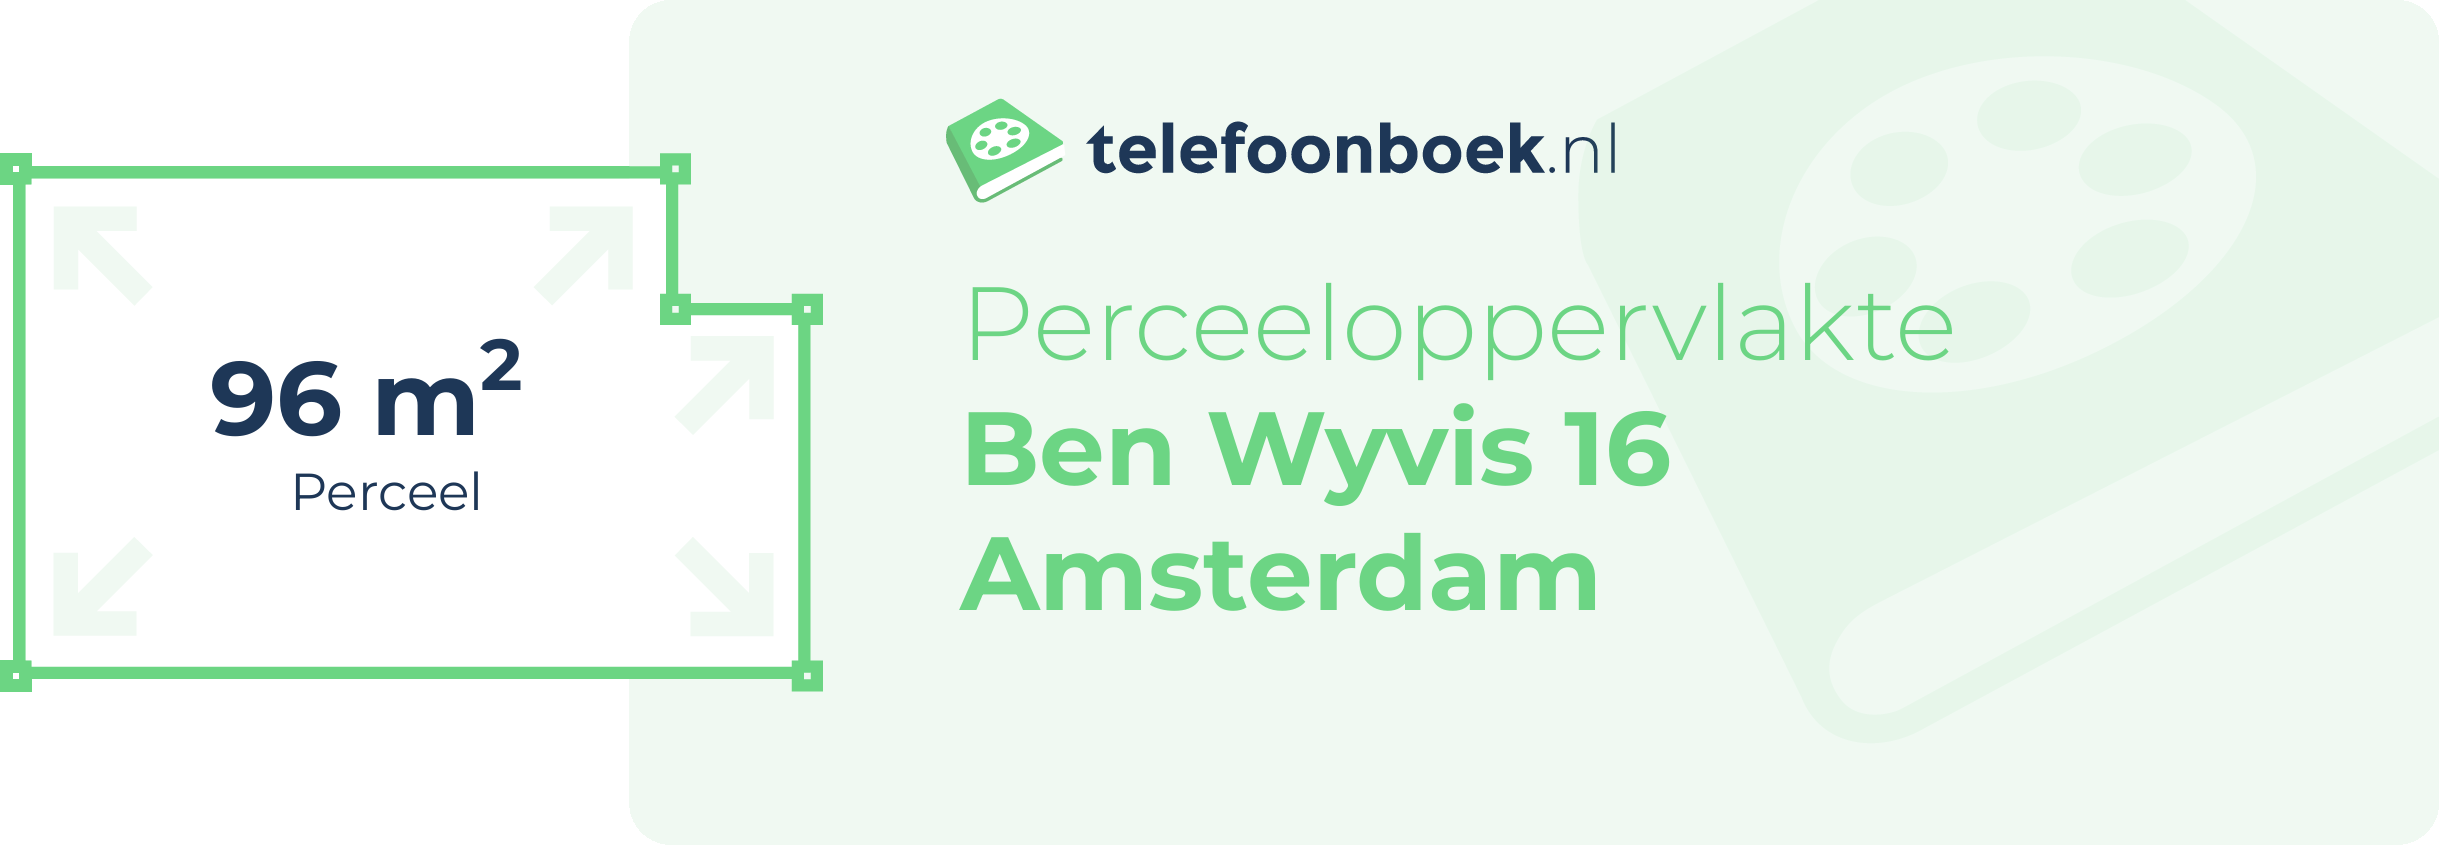 Perceeloppervlakte Ben Wyvis 16 Amsterdam